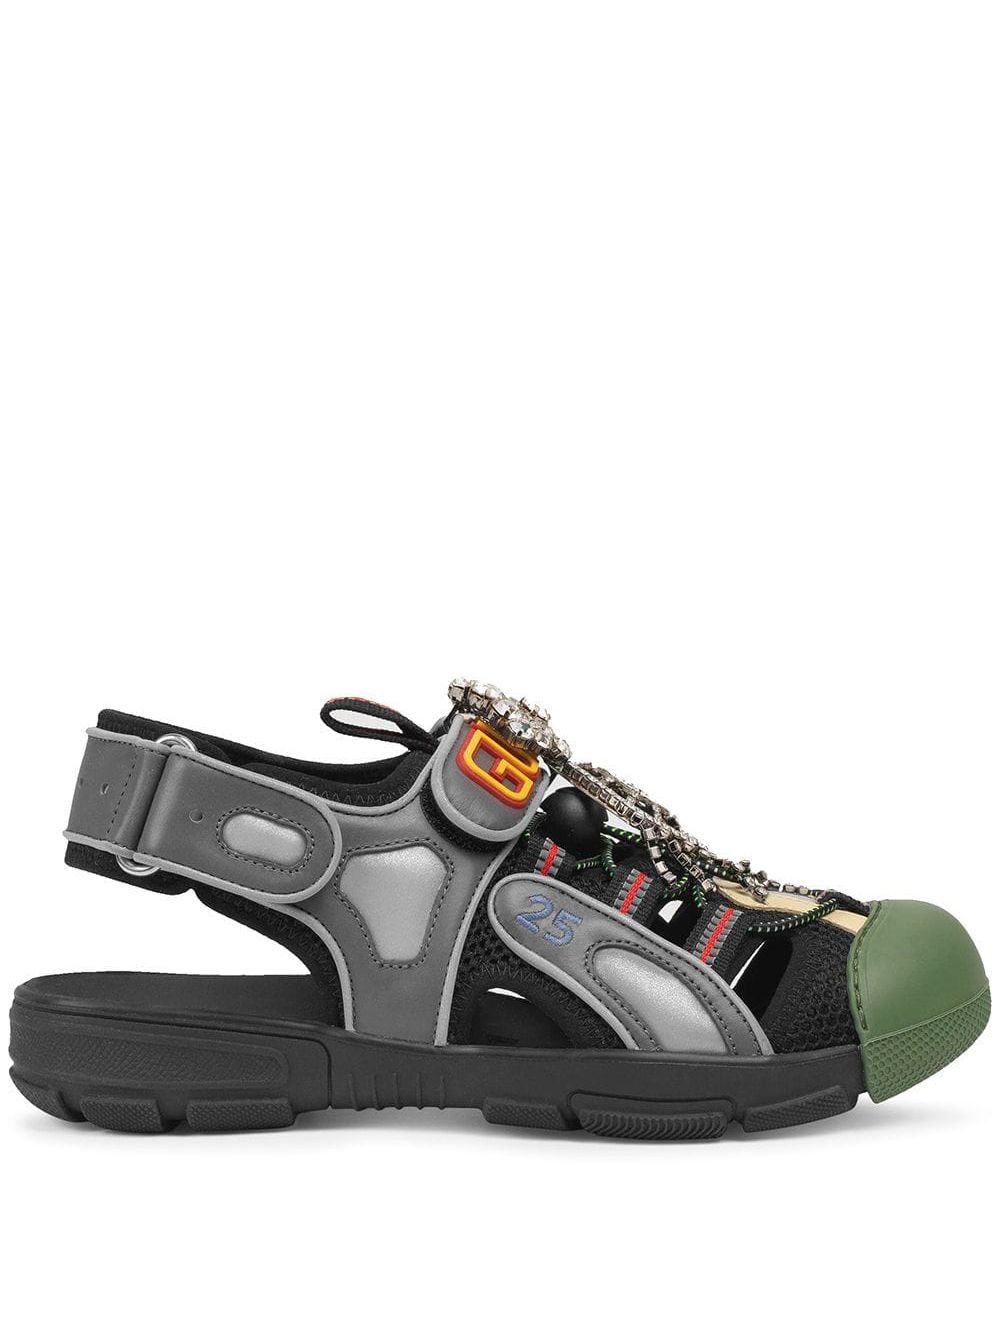 фото Gucci декорированные сандалии с сетчатыми вставками